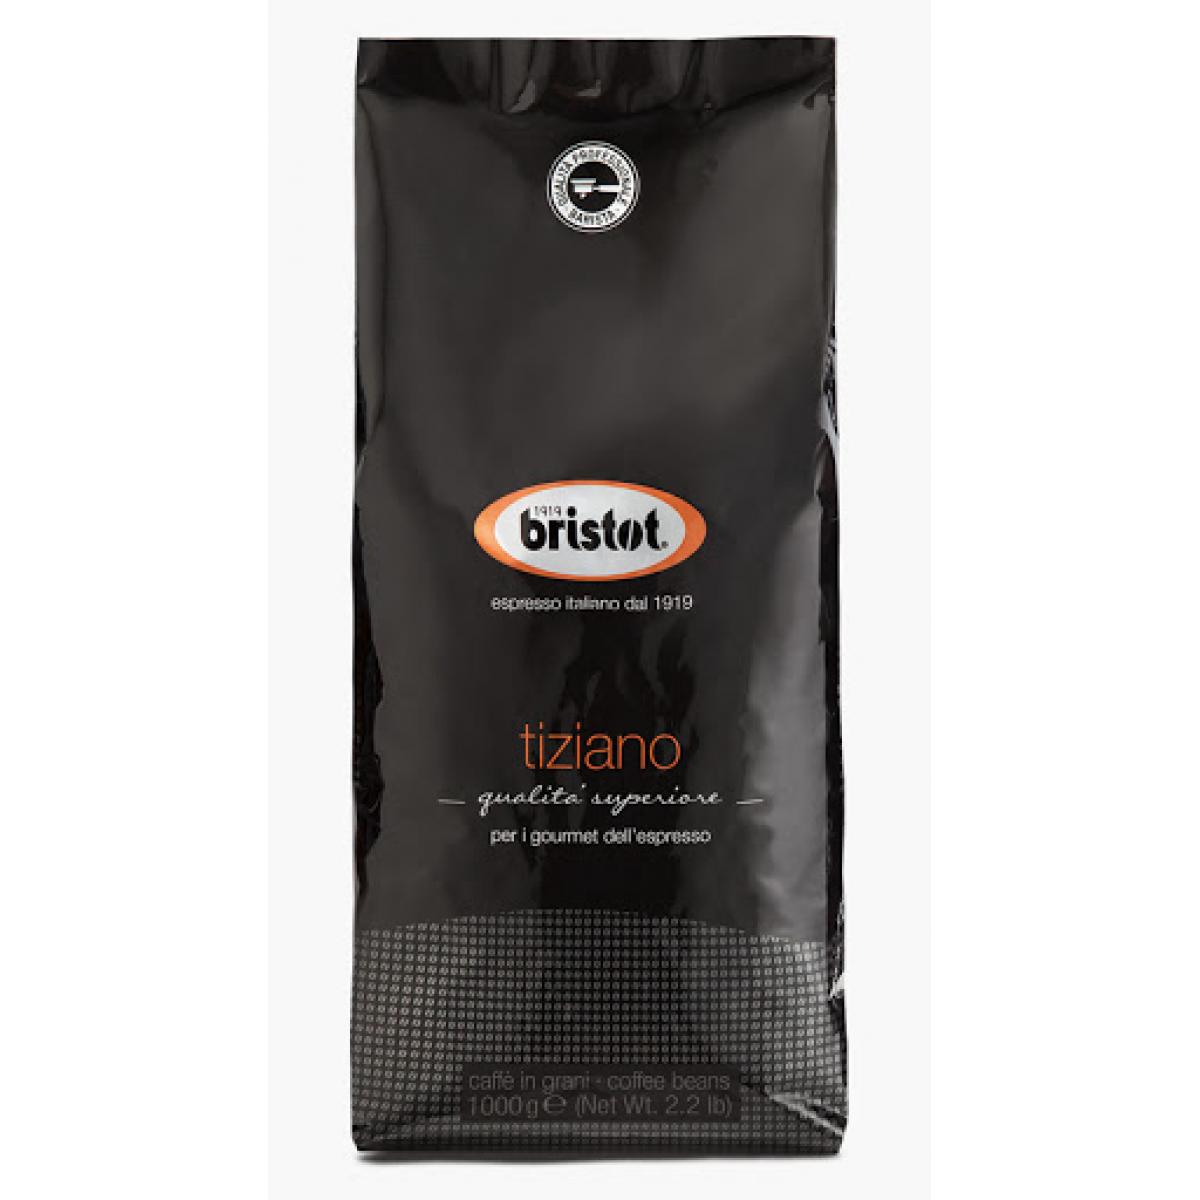 Купить зерновой кофе для кофемашины недорого. Кофе в зернах Bristot Espresso. Кофе в зернах Bristot Tiziano. Кофе зерновой Bristot Espresso, 1000гр. Кофе в зернах Bristot Espresso Plus.